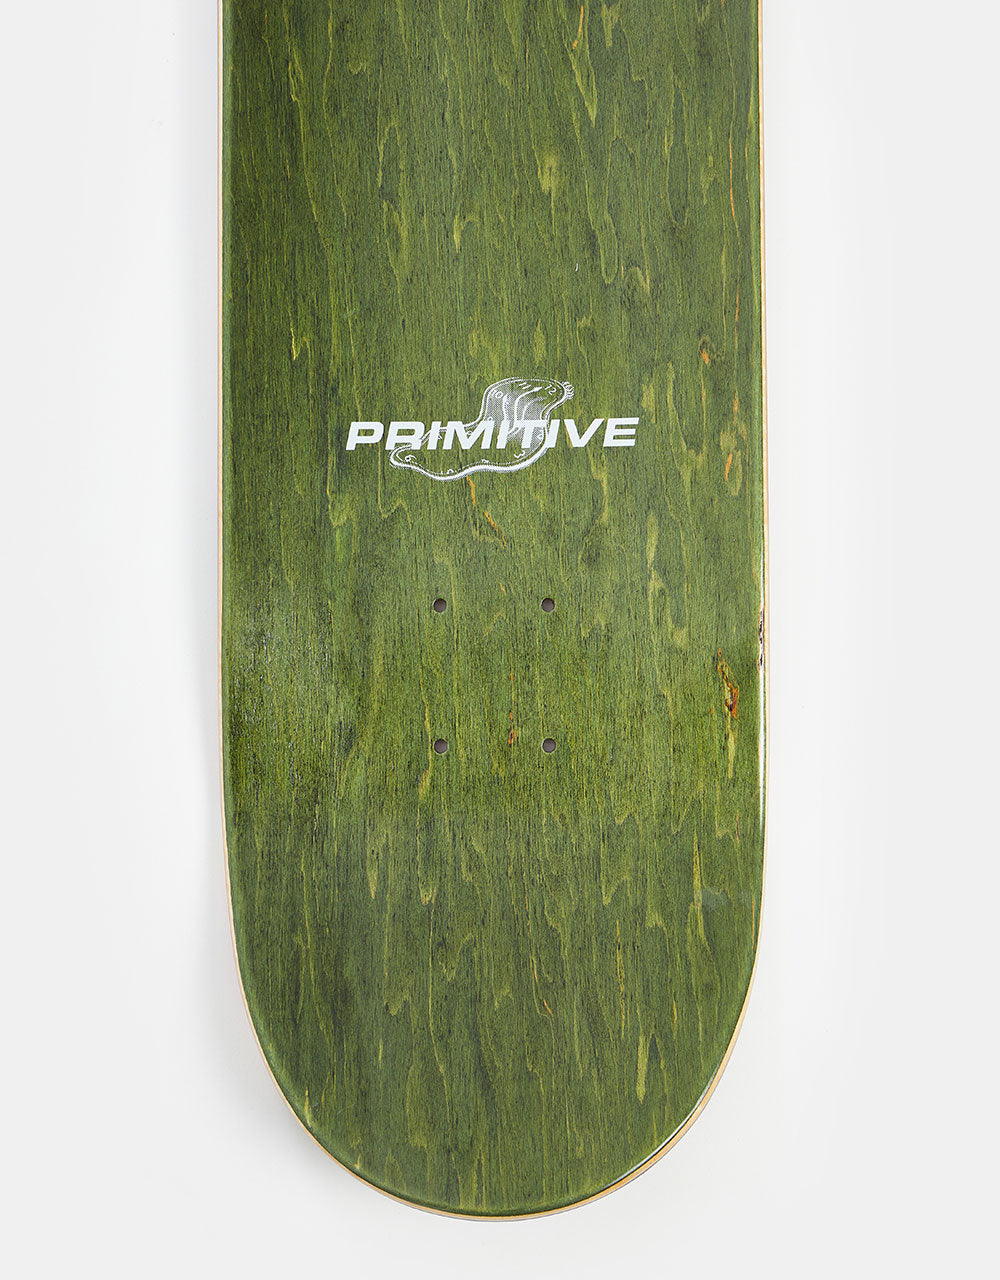 Primitive Rodriguez Dreaming Skateboard Deck - 8.25"